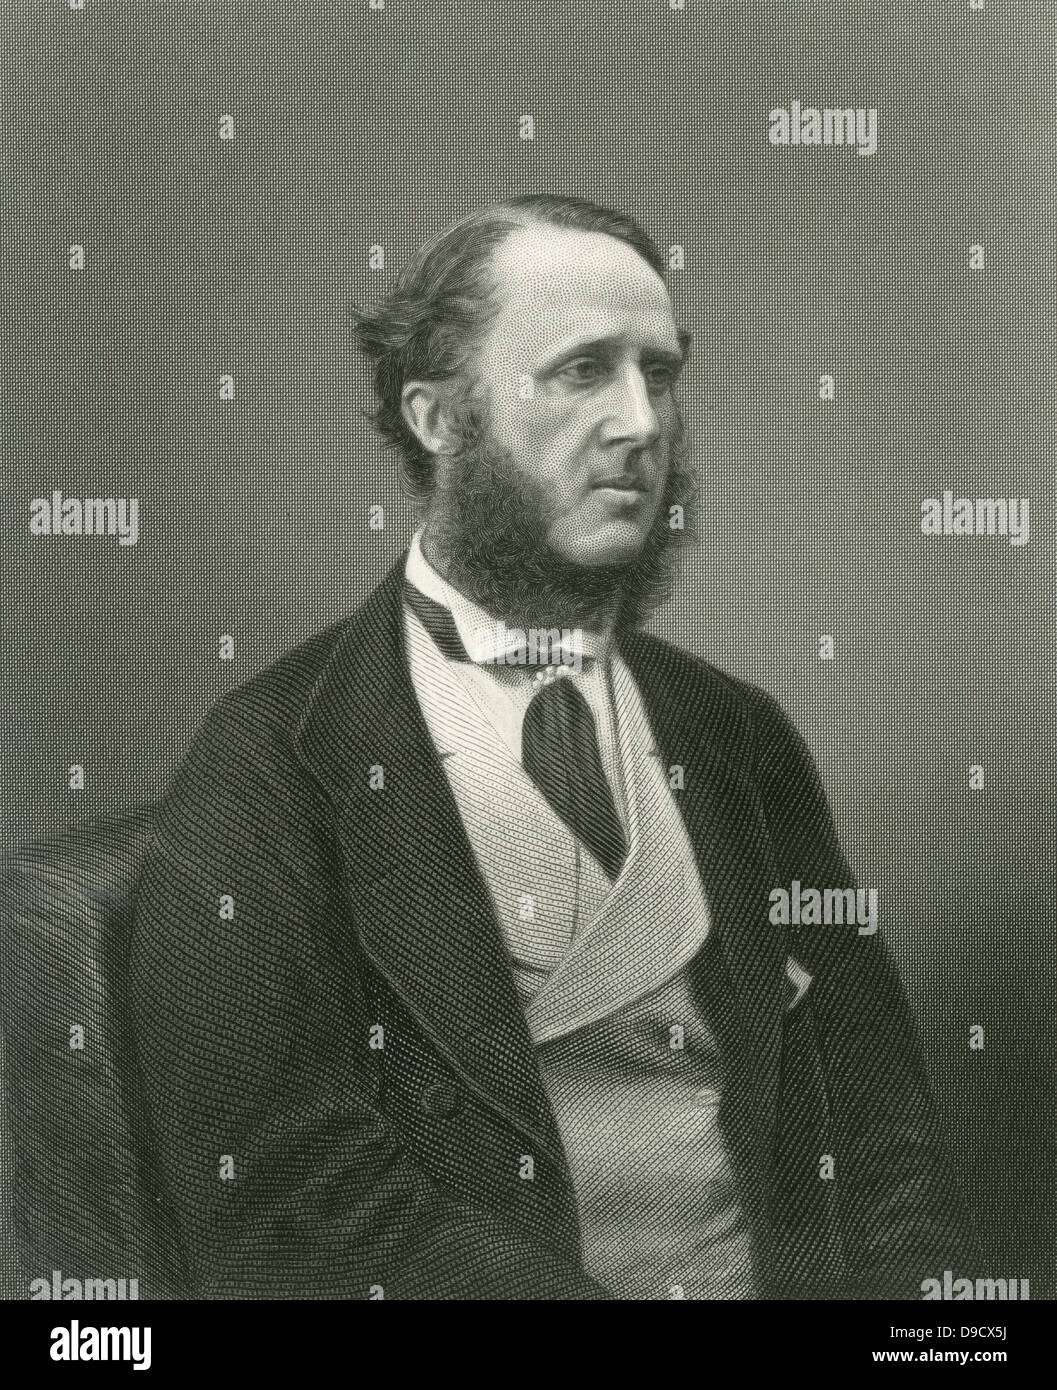 Dudley Francis Stuart Ryder (1831-1900) 3 Graf von Harrowby, bekannt als Viscount Sandon, bevor er seinen Titel 1882 geerbt. Englisch konservative Politiker, vor allem für das Bildungsgesetz von 1876 verantwortlich. Gravur. Stockfoto